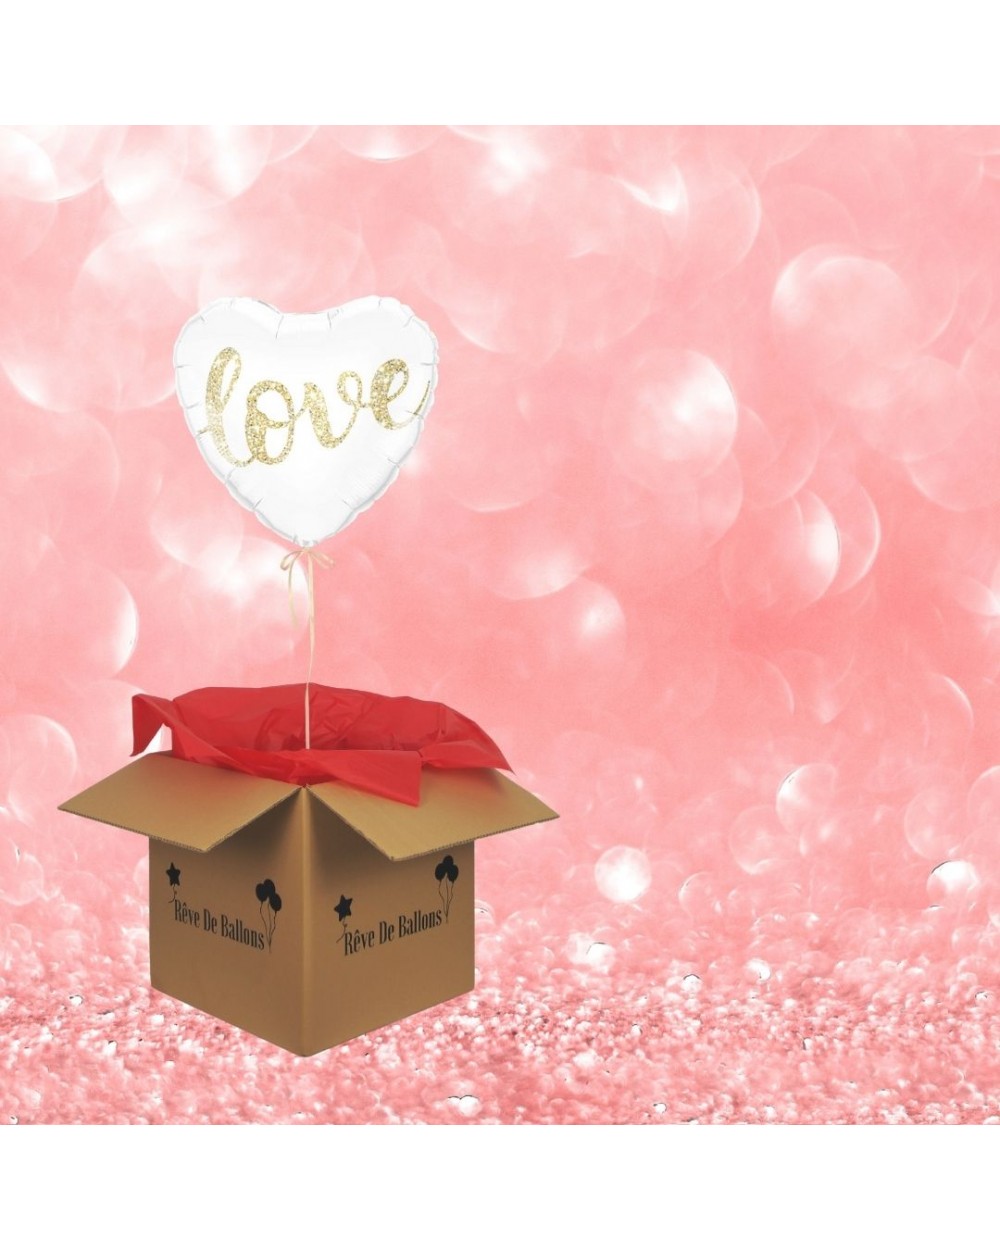 Offrez un ballon coeur Love pour la Saint-Valentin